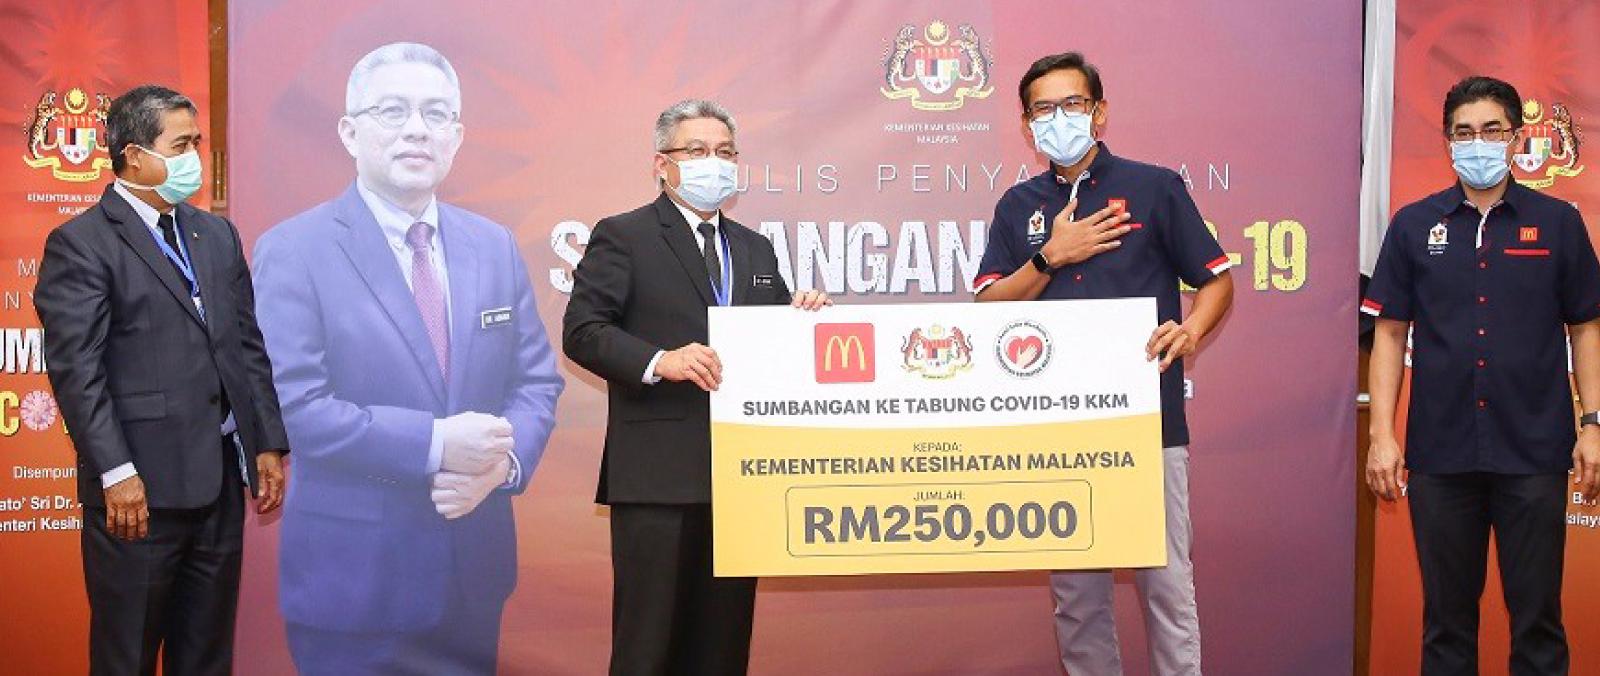 McDonald’s Malaysia dan Kementerian Kesihatan Malaysia berganding bahu hadapi COVID-19's image'